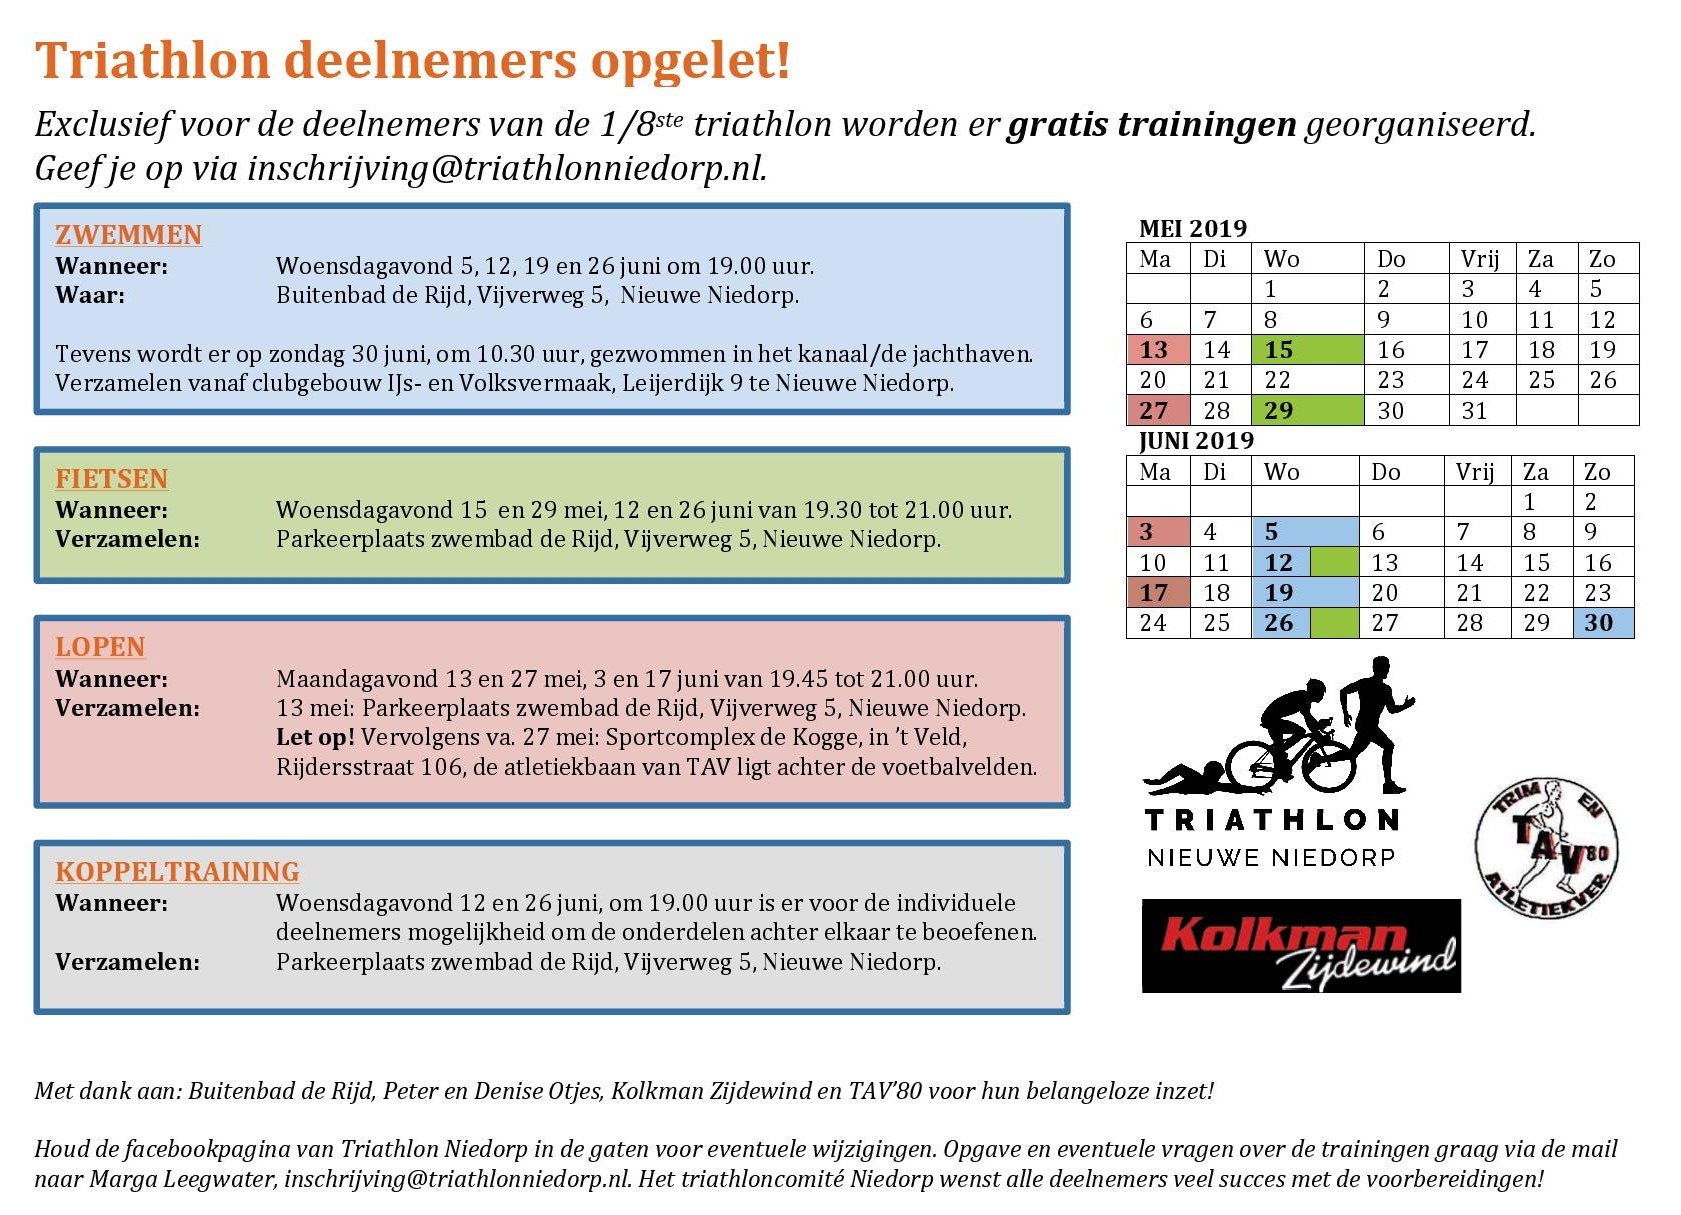 Gratis trainingen Triathlon Nieuwe Niedorp 3kkkkk